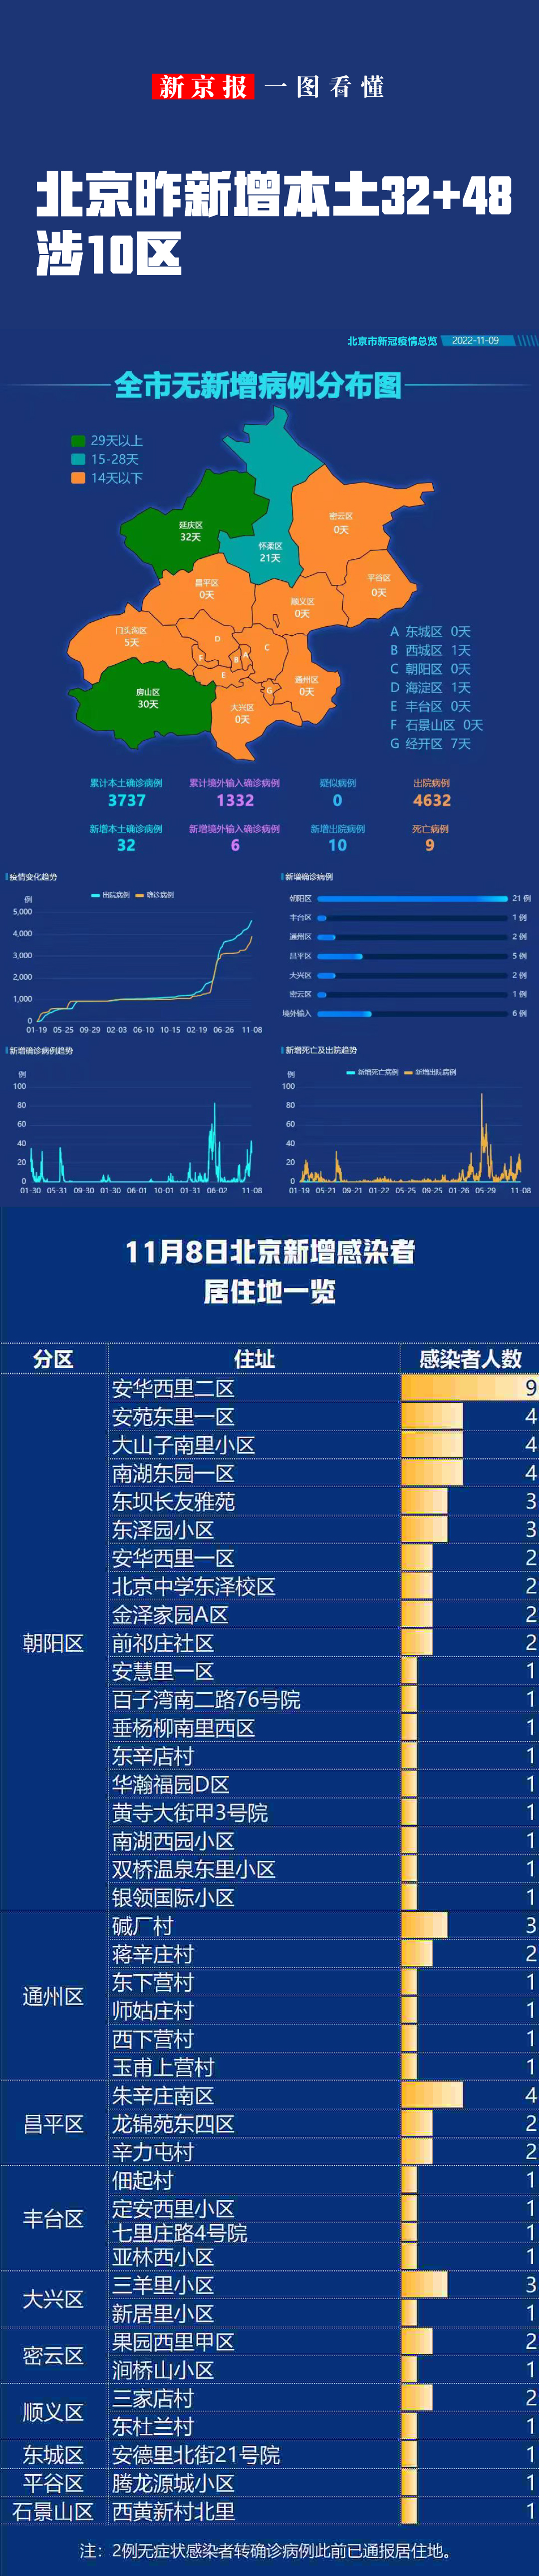 一图看懂丨北京昨新增本土32＋48社会面筛查发现6例东南大学怎么样